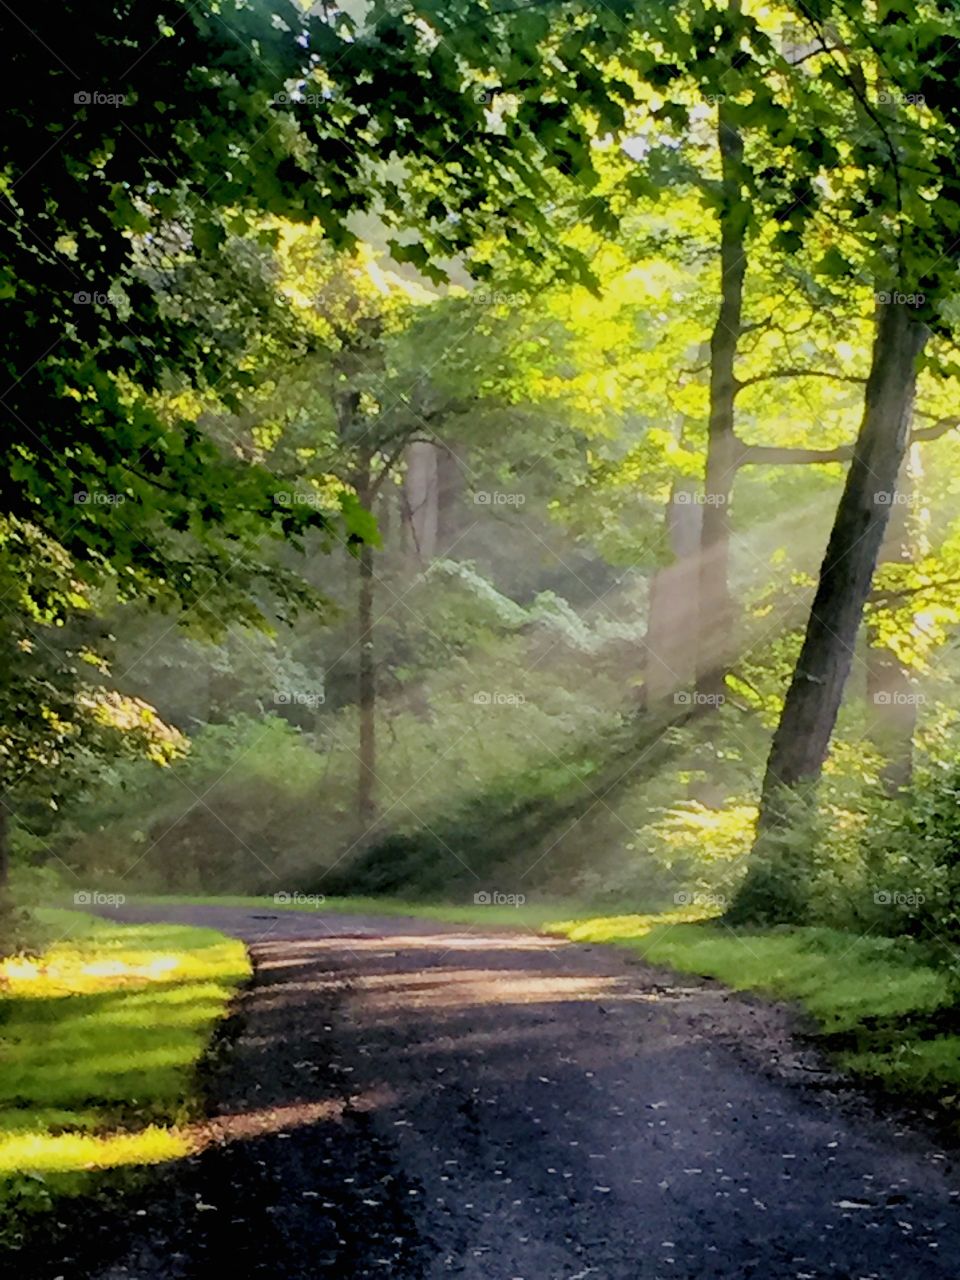 Road, Leaf, Nature, Guidance, Wood